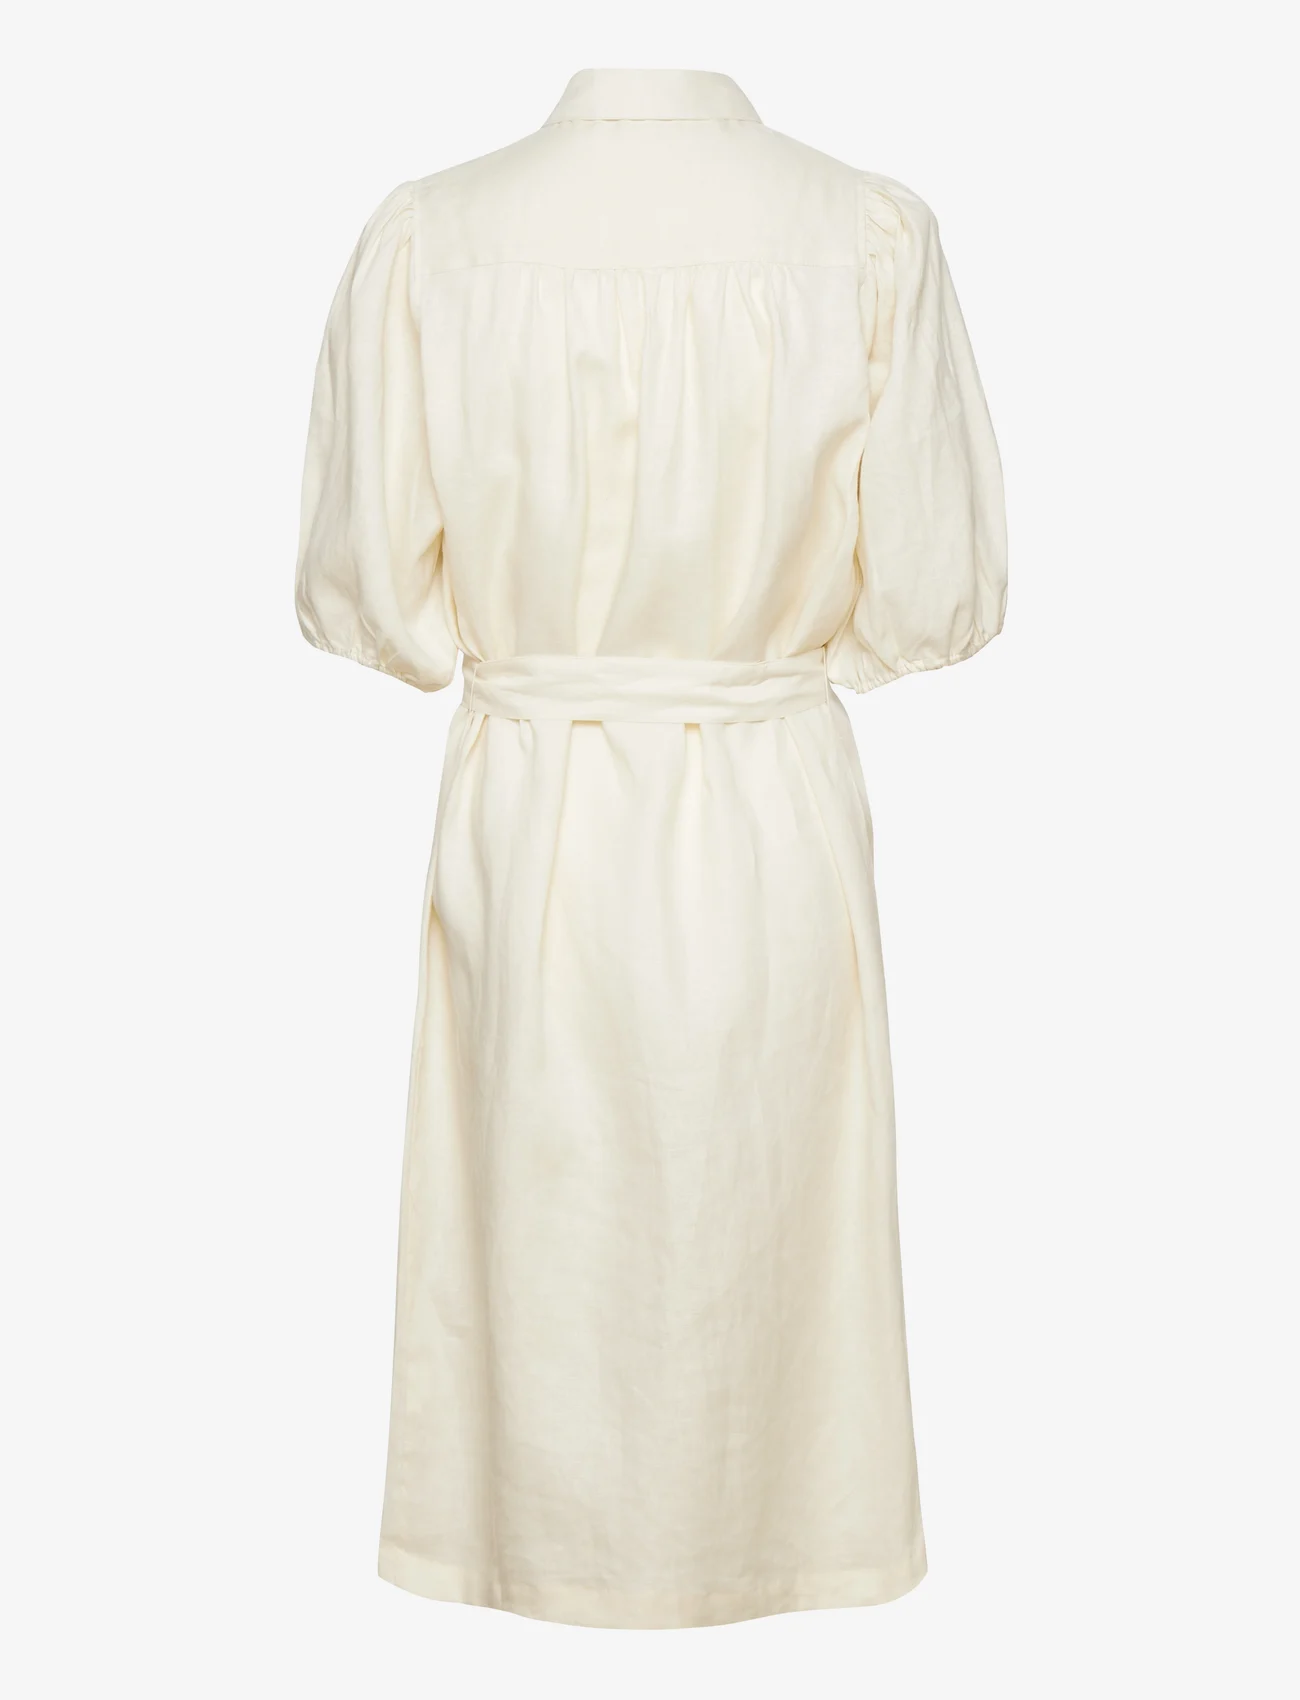 Rosemunde - Linen dress - marškinių tipo suknelės - ivory - 1